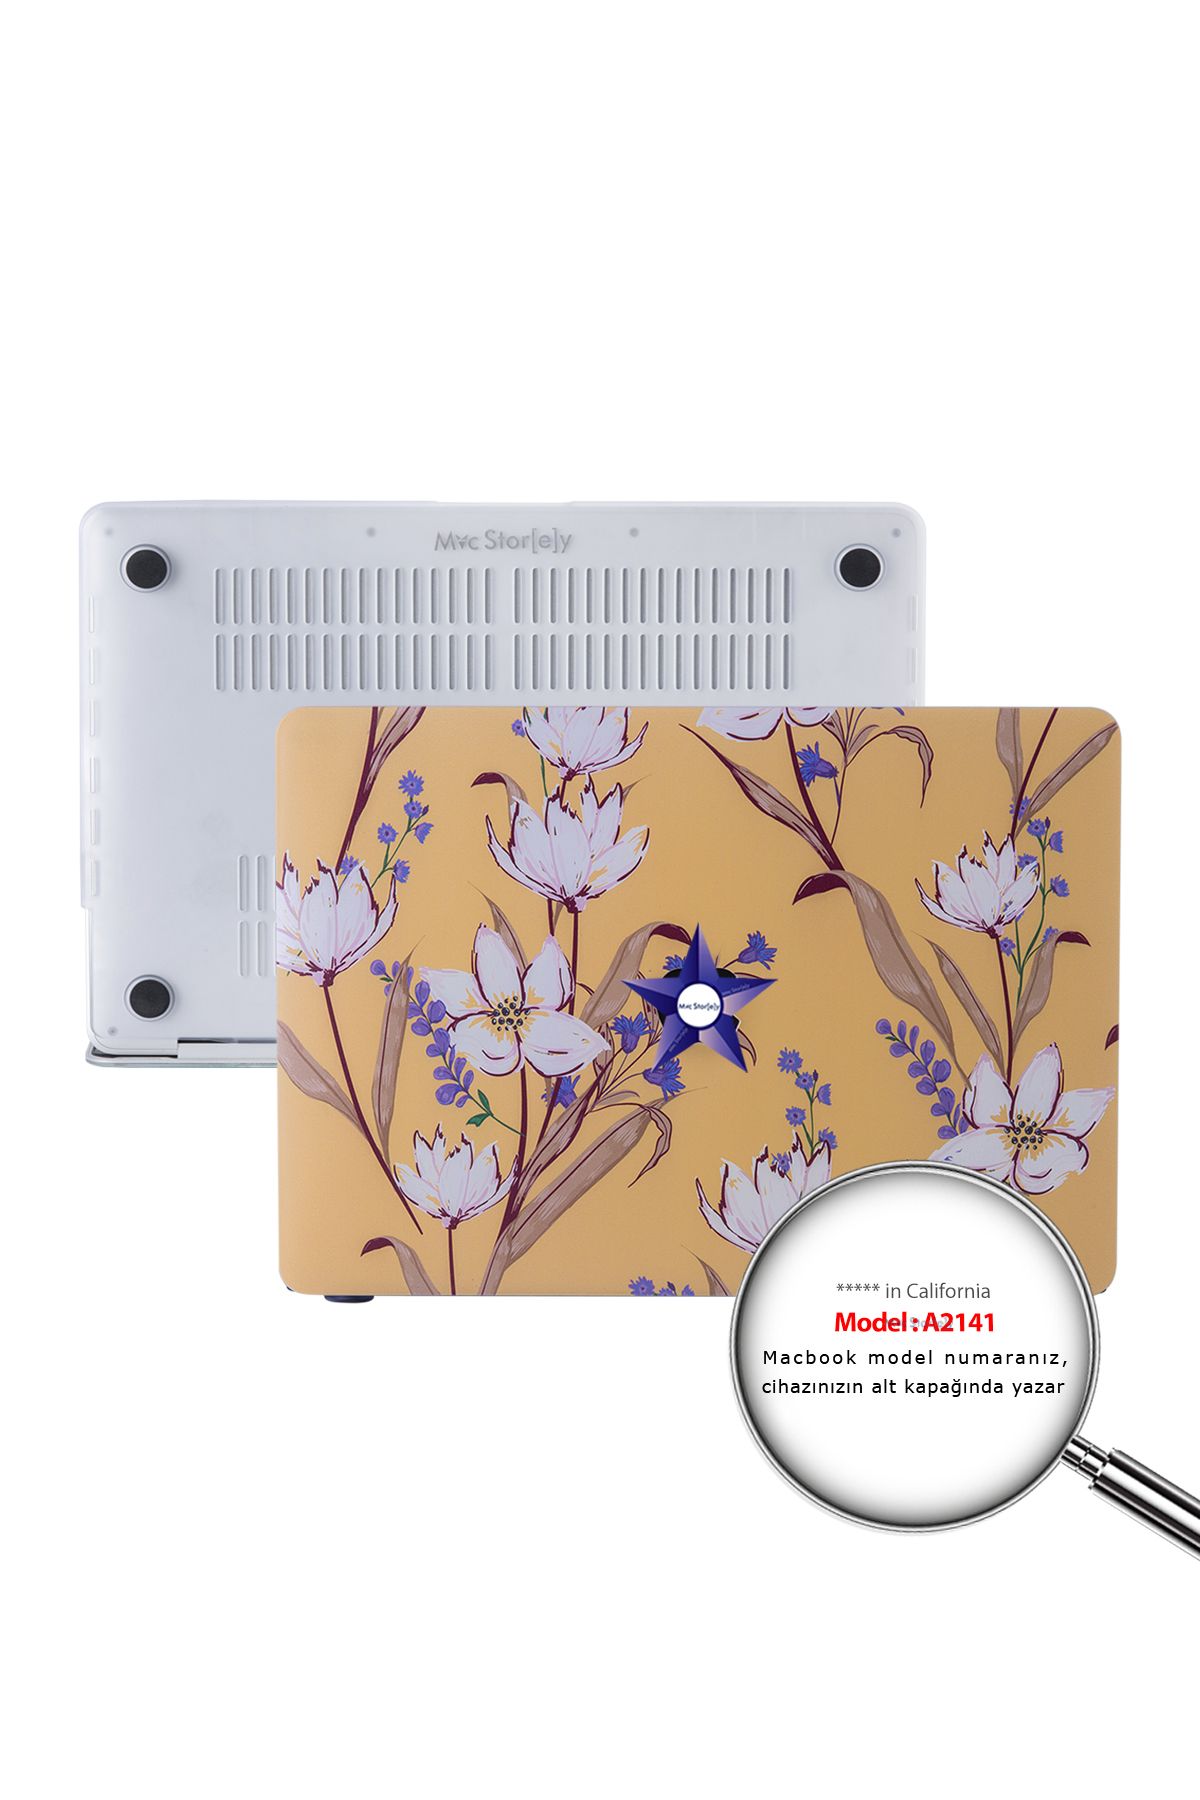 Mcstorey Macbook Pro Kılıf 16inç Flower04 (2019 YILI ÜRETİMİ IÇİN) A2141 Modeli Ile Uyumlu